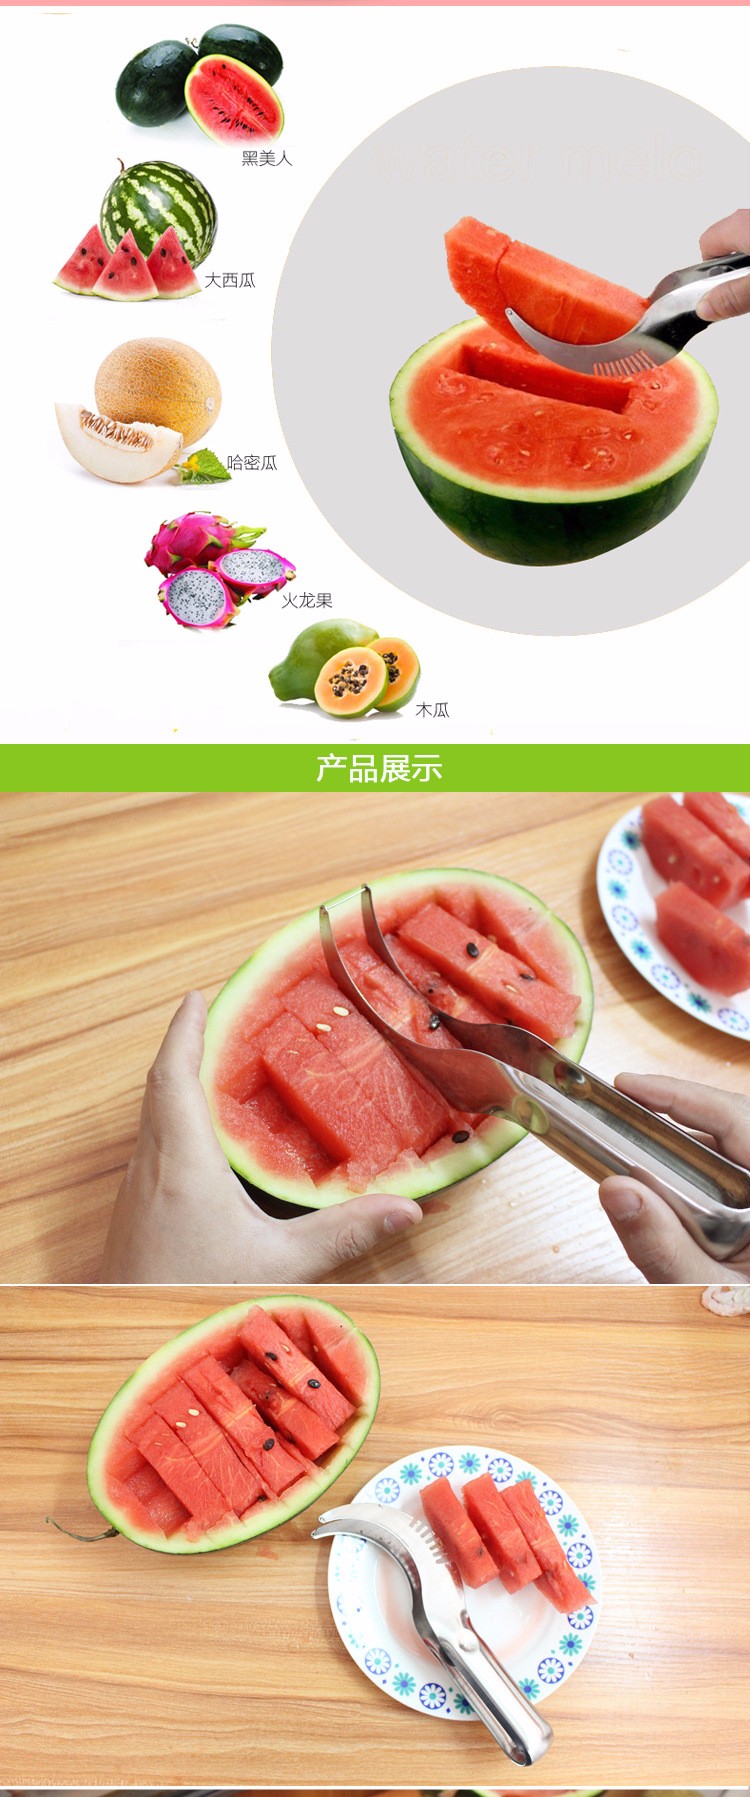 Watermelon Knife Cutter-1VCM